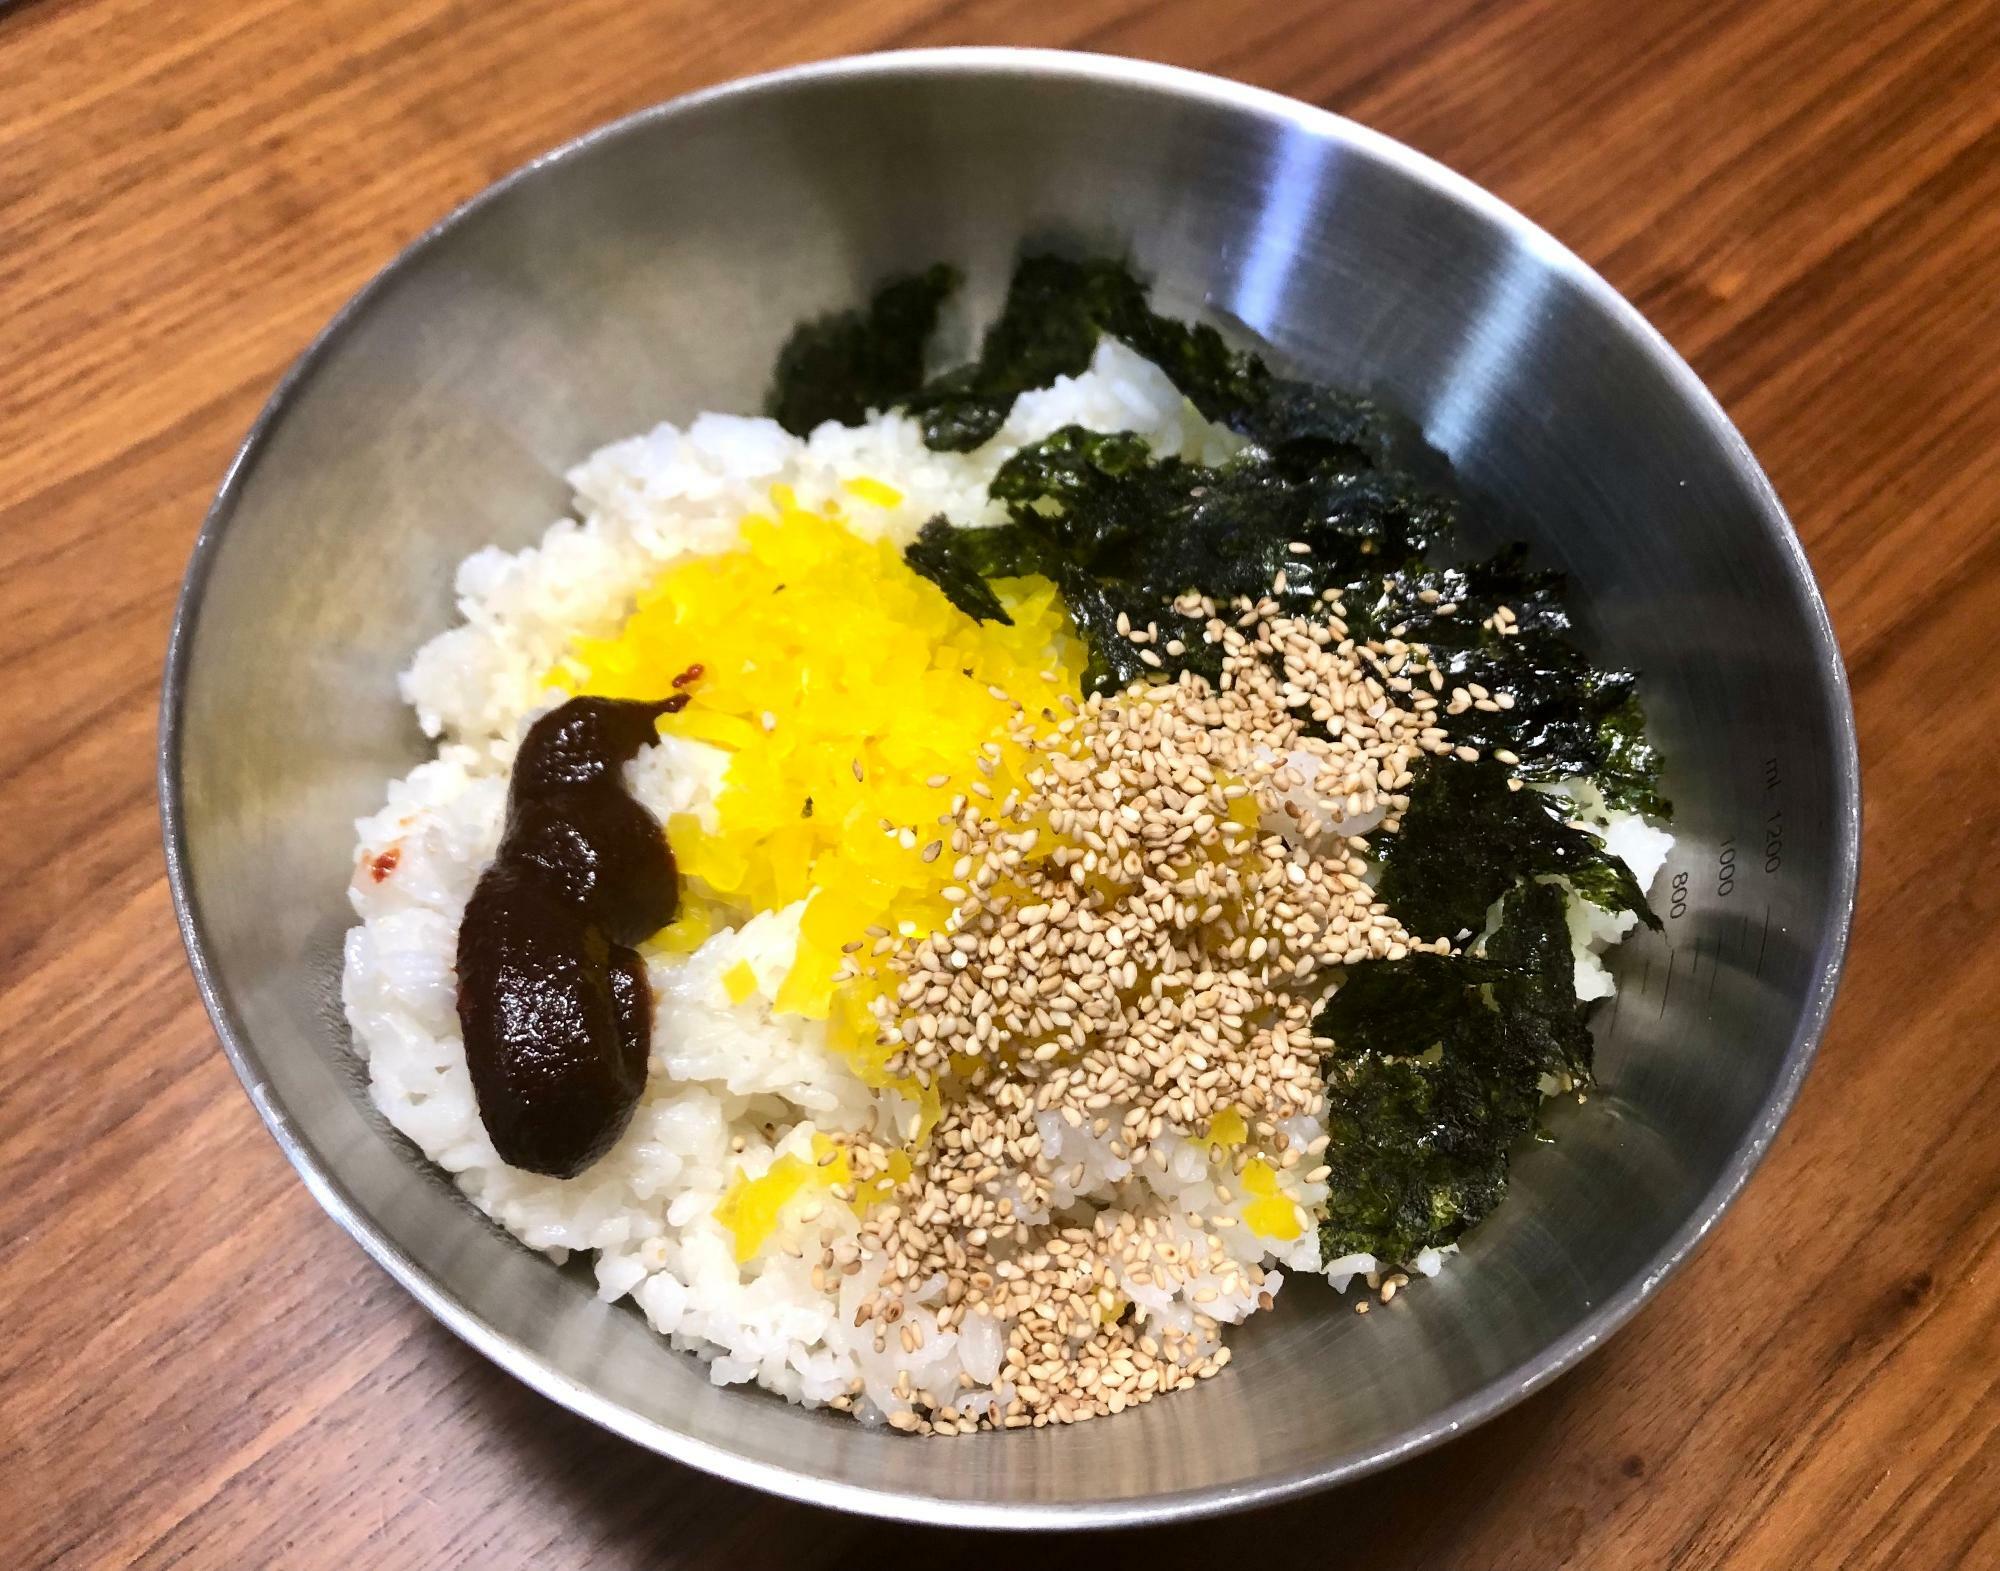 チュモッパのレシピは調べると色々ありましたが、沢庵・ごま油・韓国海苔の3つは必ず入っていました。3つ以外はお好みで具材を選んでも良さそうです。